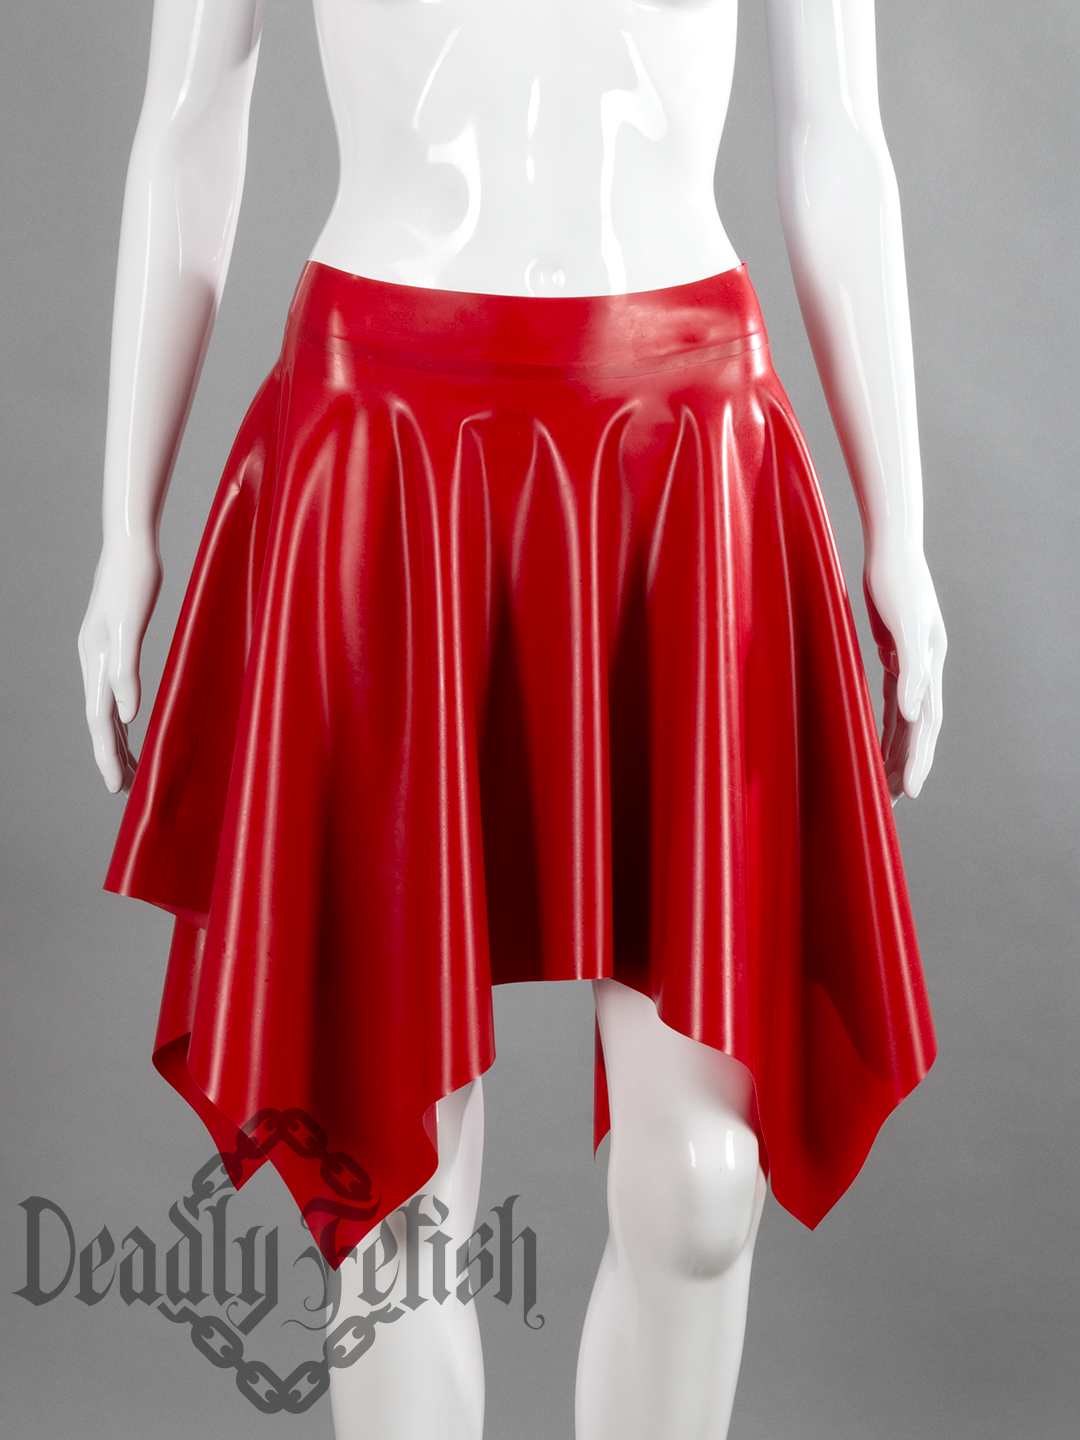 Deadly Fetish Latex: Skirt #09